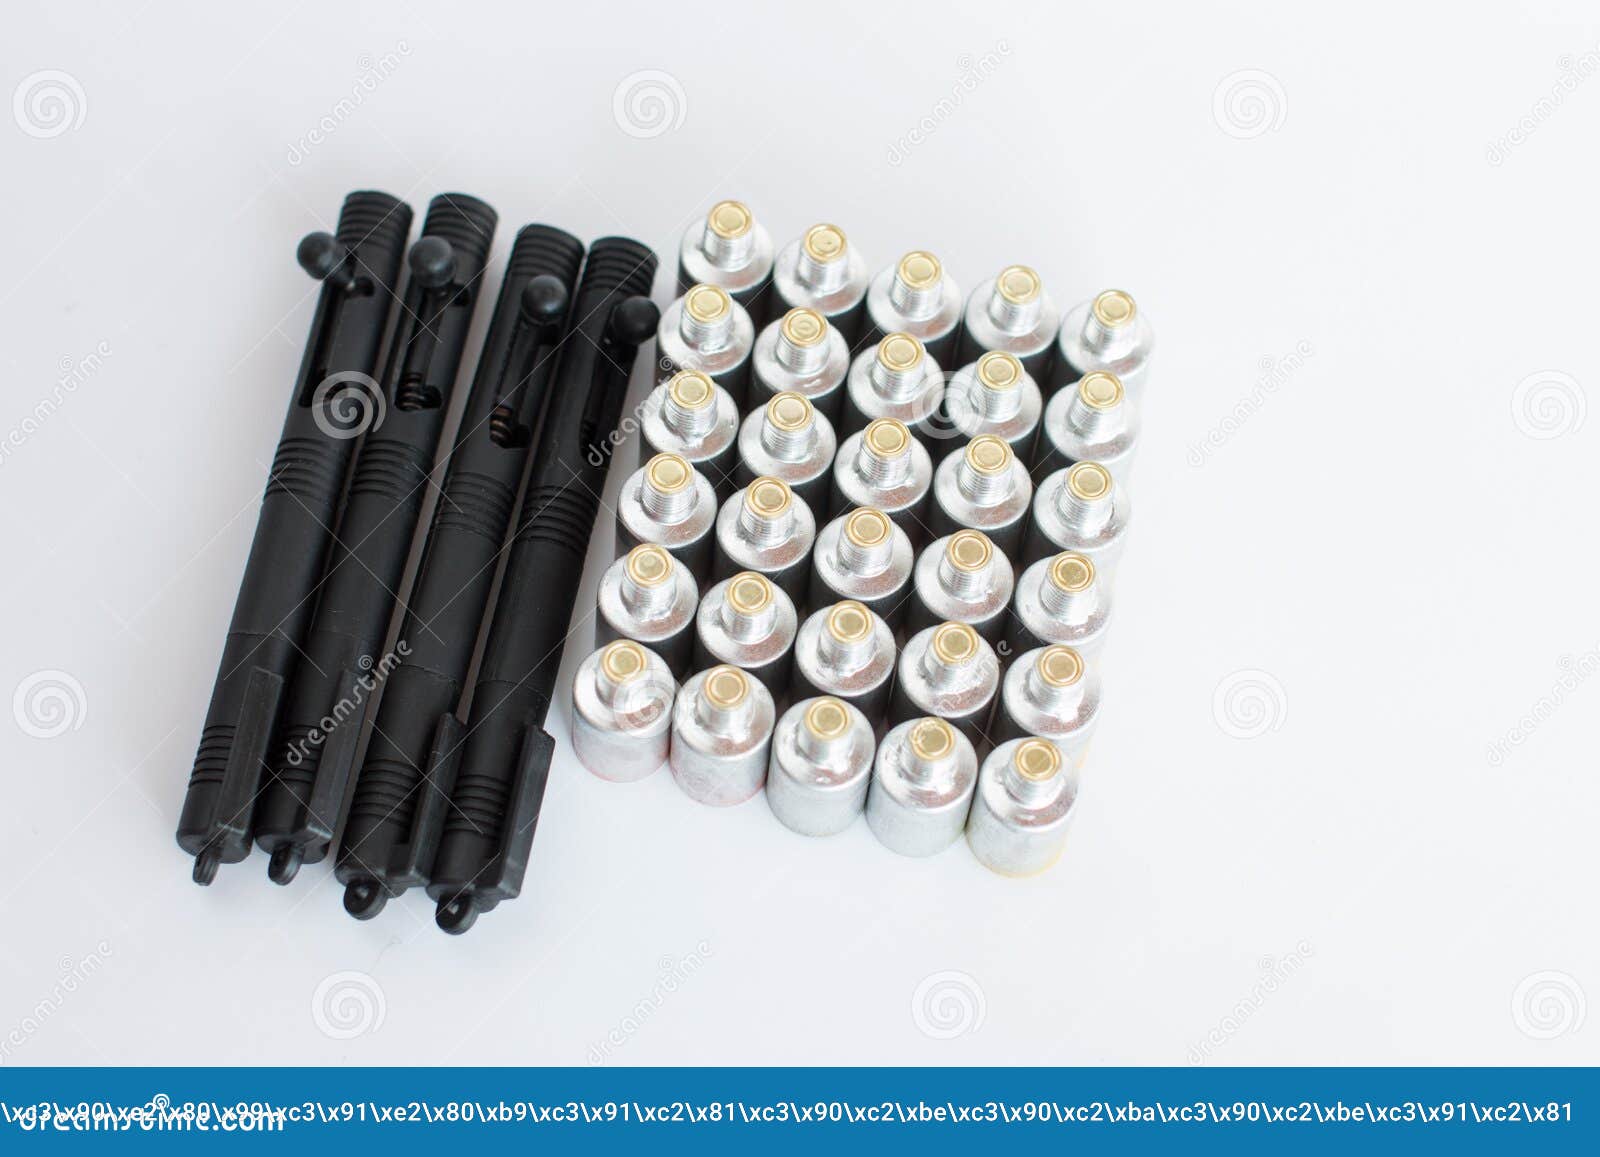 Kunststoffabschussvorrichtung Einer Signalrakete. Farbige Fackeln Stockbild  - Bild von rauch, lack: 224405067